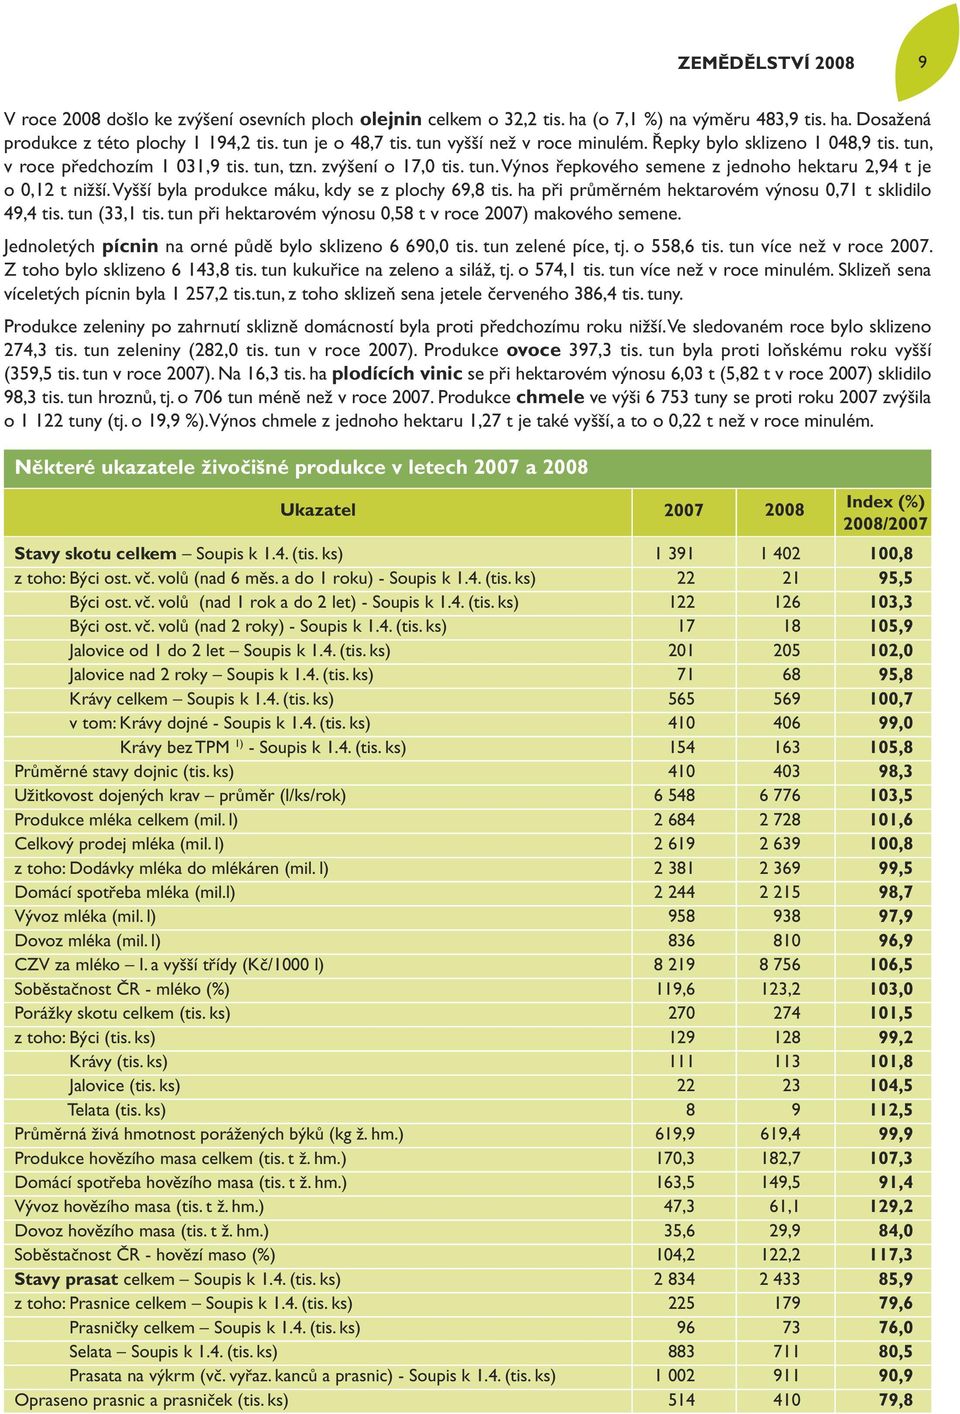 Vyšší byla produkce máku, kdy se z plochy 69,8 tis. ha při průměrném hektarovém výnosu 0,71 t sklidilo 49,4 tis. tun (33,1 tis. tun při hektarovém výnosu 0,58 t v roce 2007) makového semene.